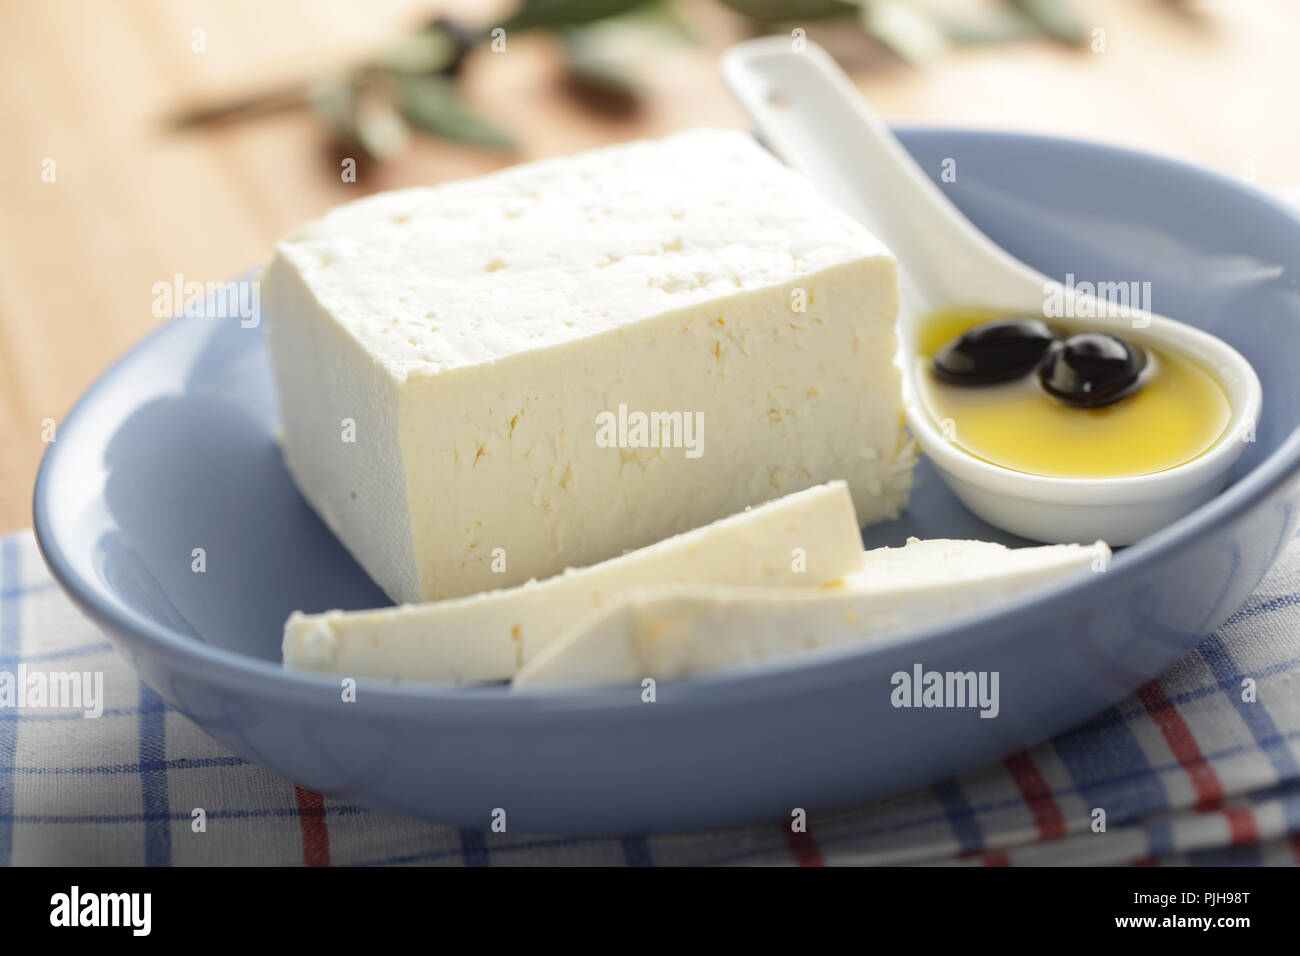 Le fromage Feta aux olives noires à l'huile d'olive Banque D'Images